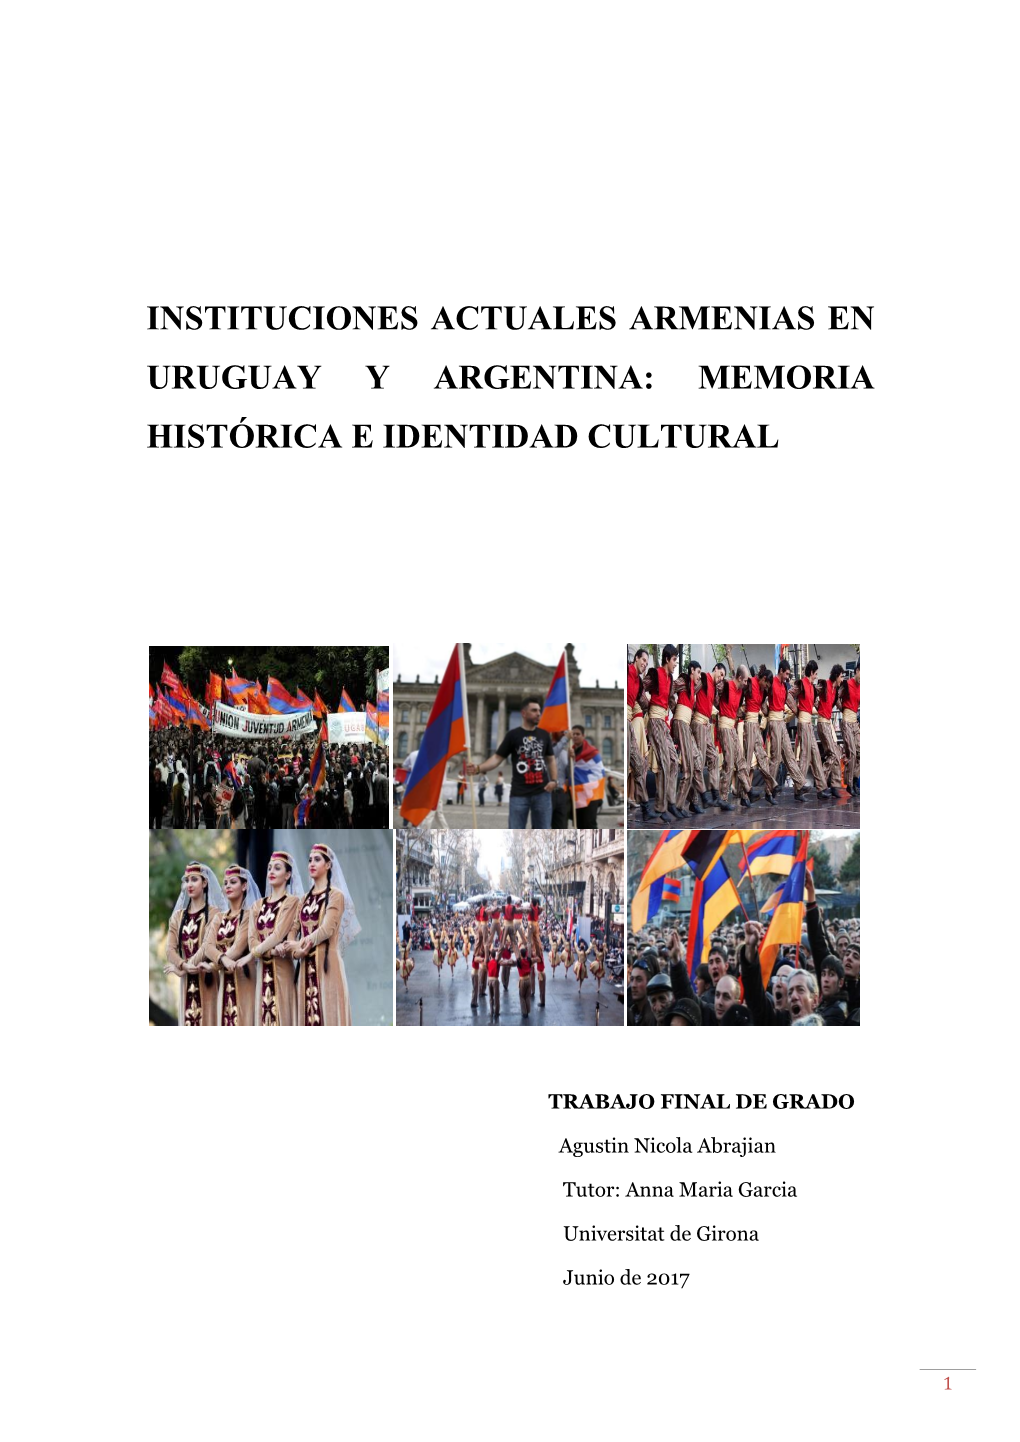 Instituciones Actuales Armenias En Uruguay Y Argentina: Memoria Histórica E Identidad Cultural